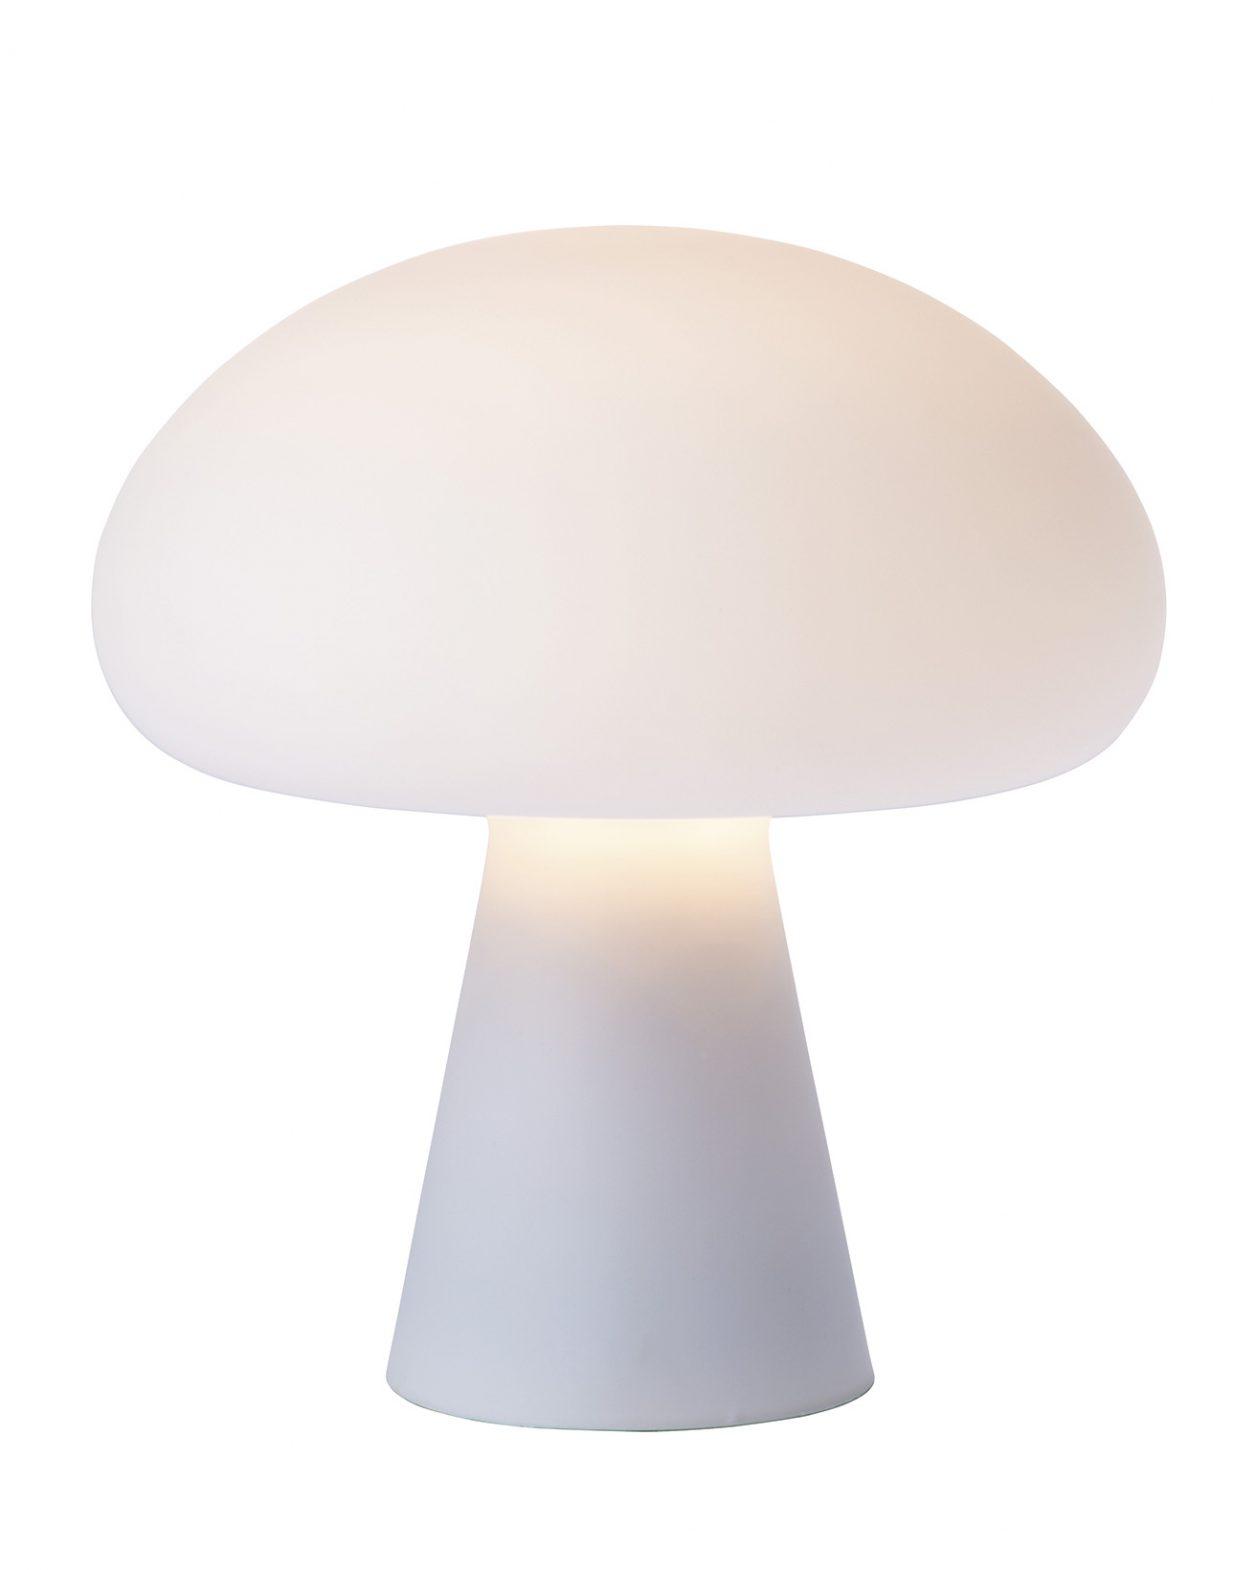 ビル・カリーが1971年に構想した照明が〈GUBI〉から製品化。